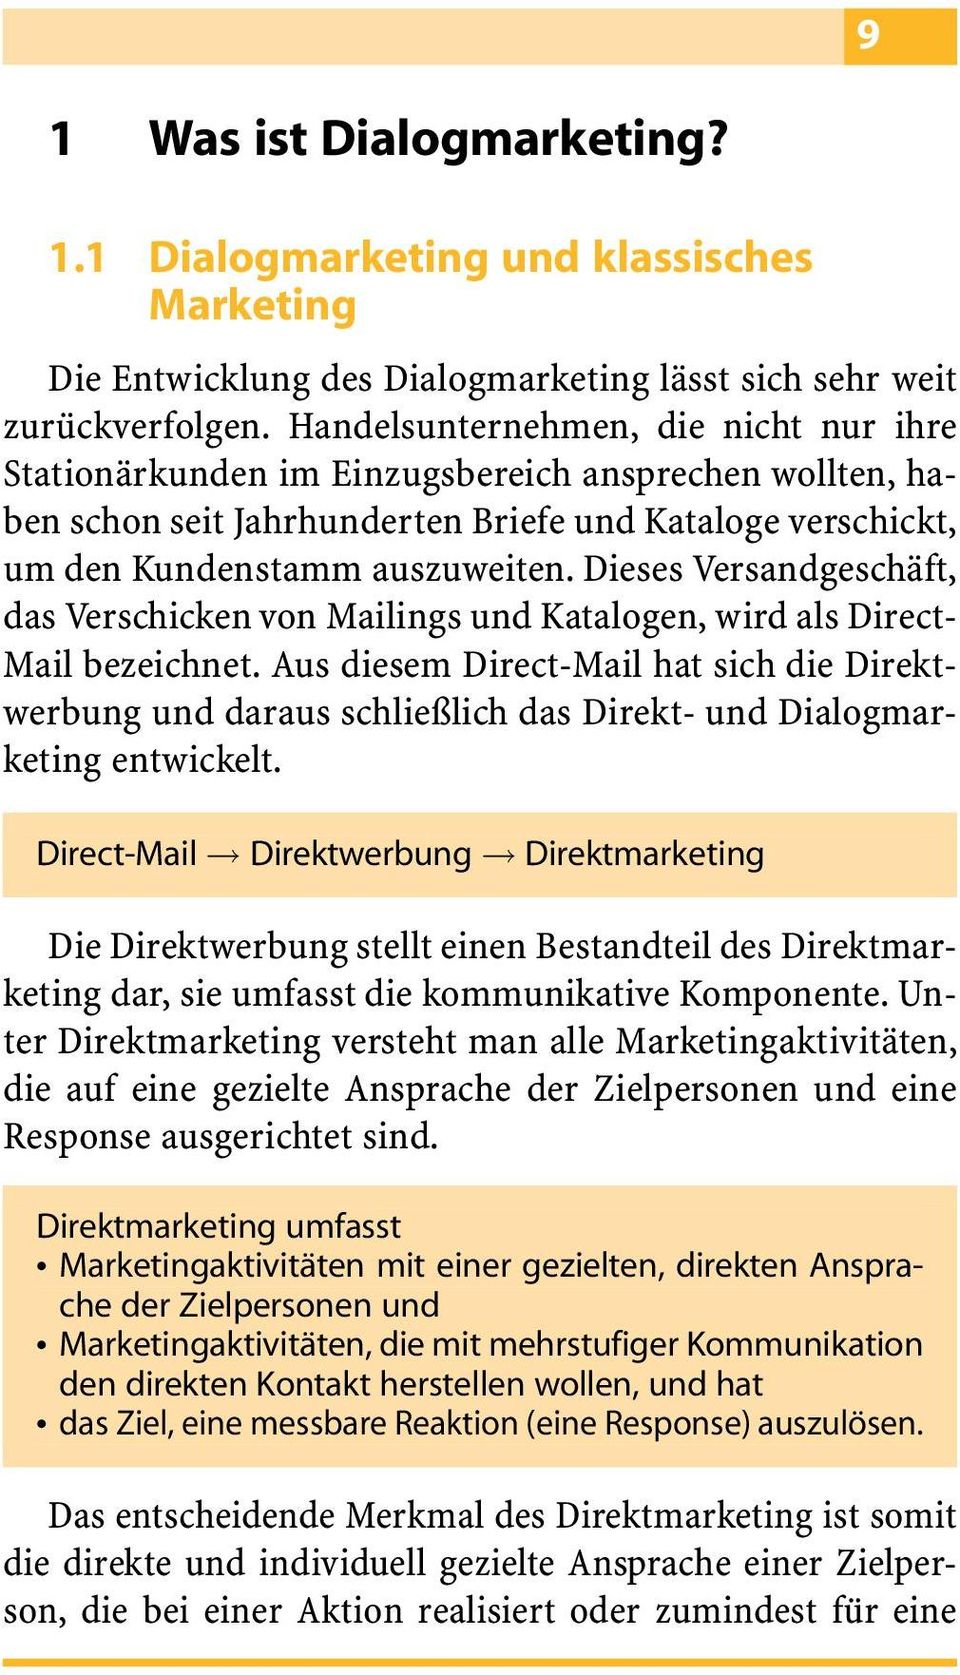 Dieses VersandgeschaÈft, das Verschicken von Mailings und Katalogen, wird als Direct- Mail bezeichnet.